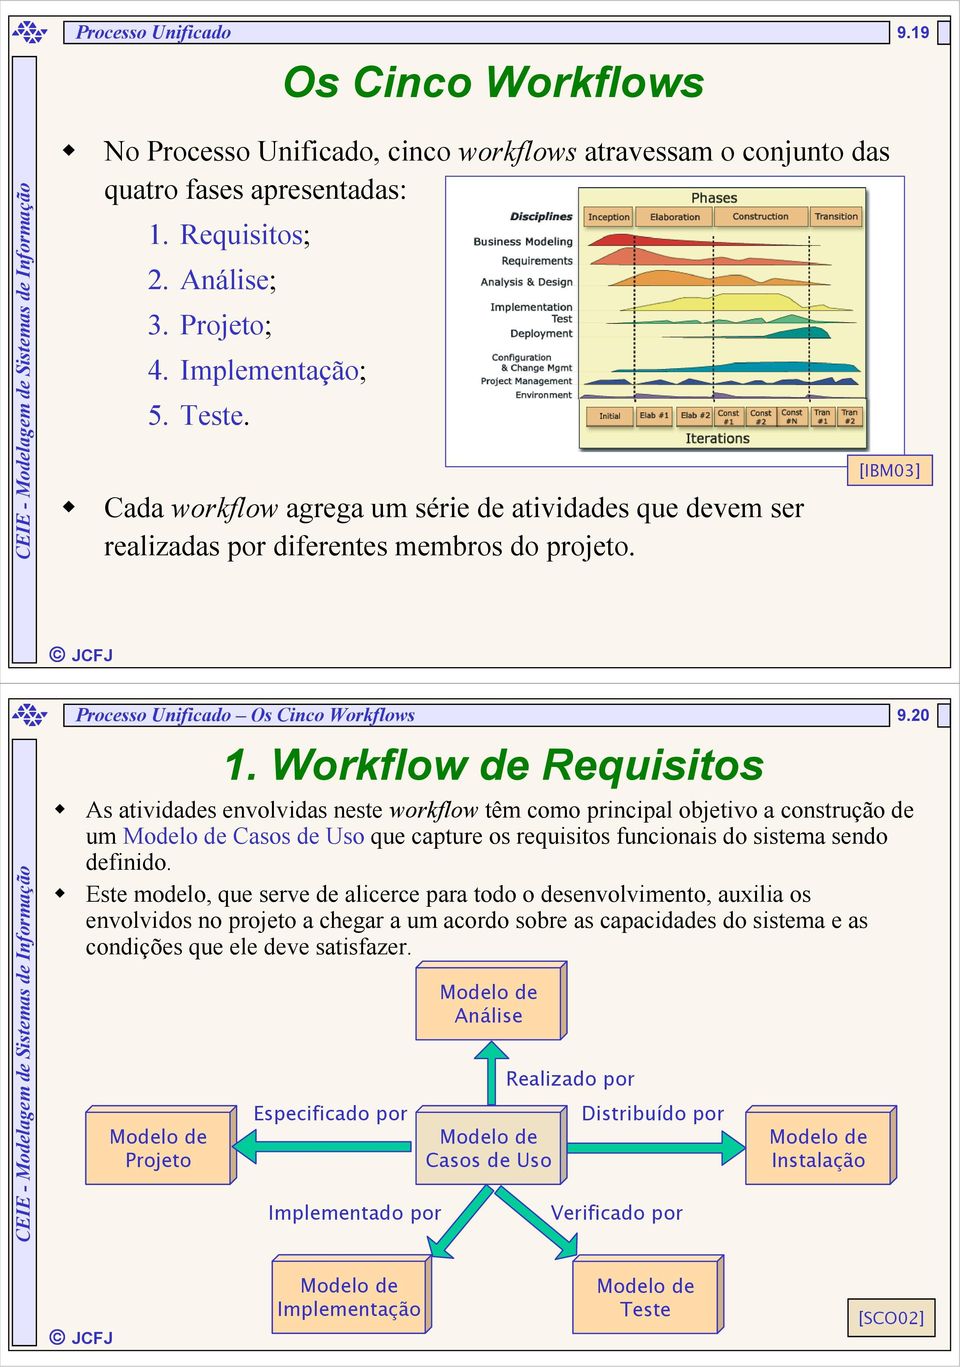 Workflow de Requisitos As atividades envolvidas neste workflow têm como principal objetivo a construção de um Modelo de Casos de Uso que capture os requisitos funcionais do sistema sendo definido.